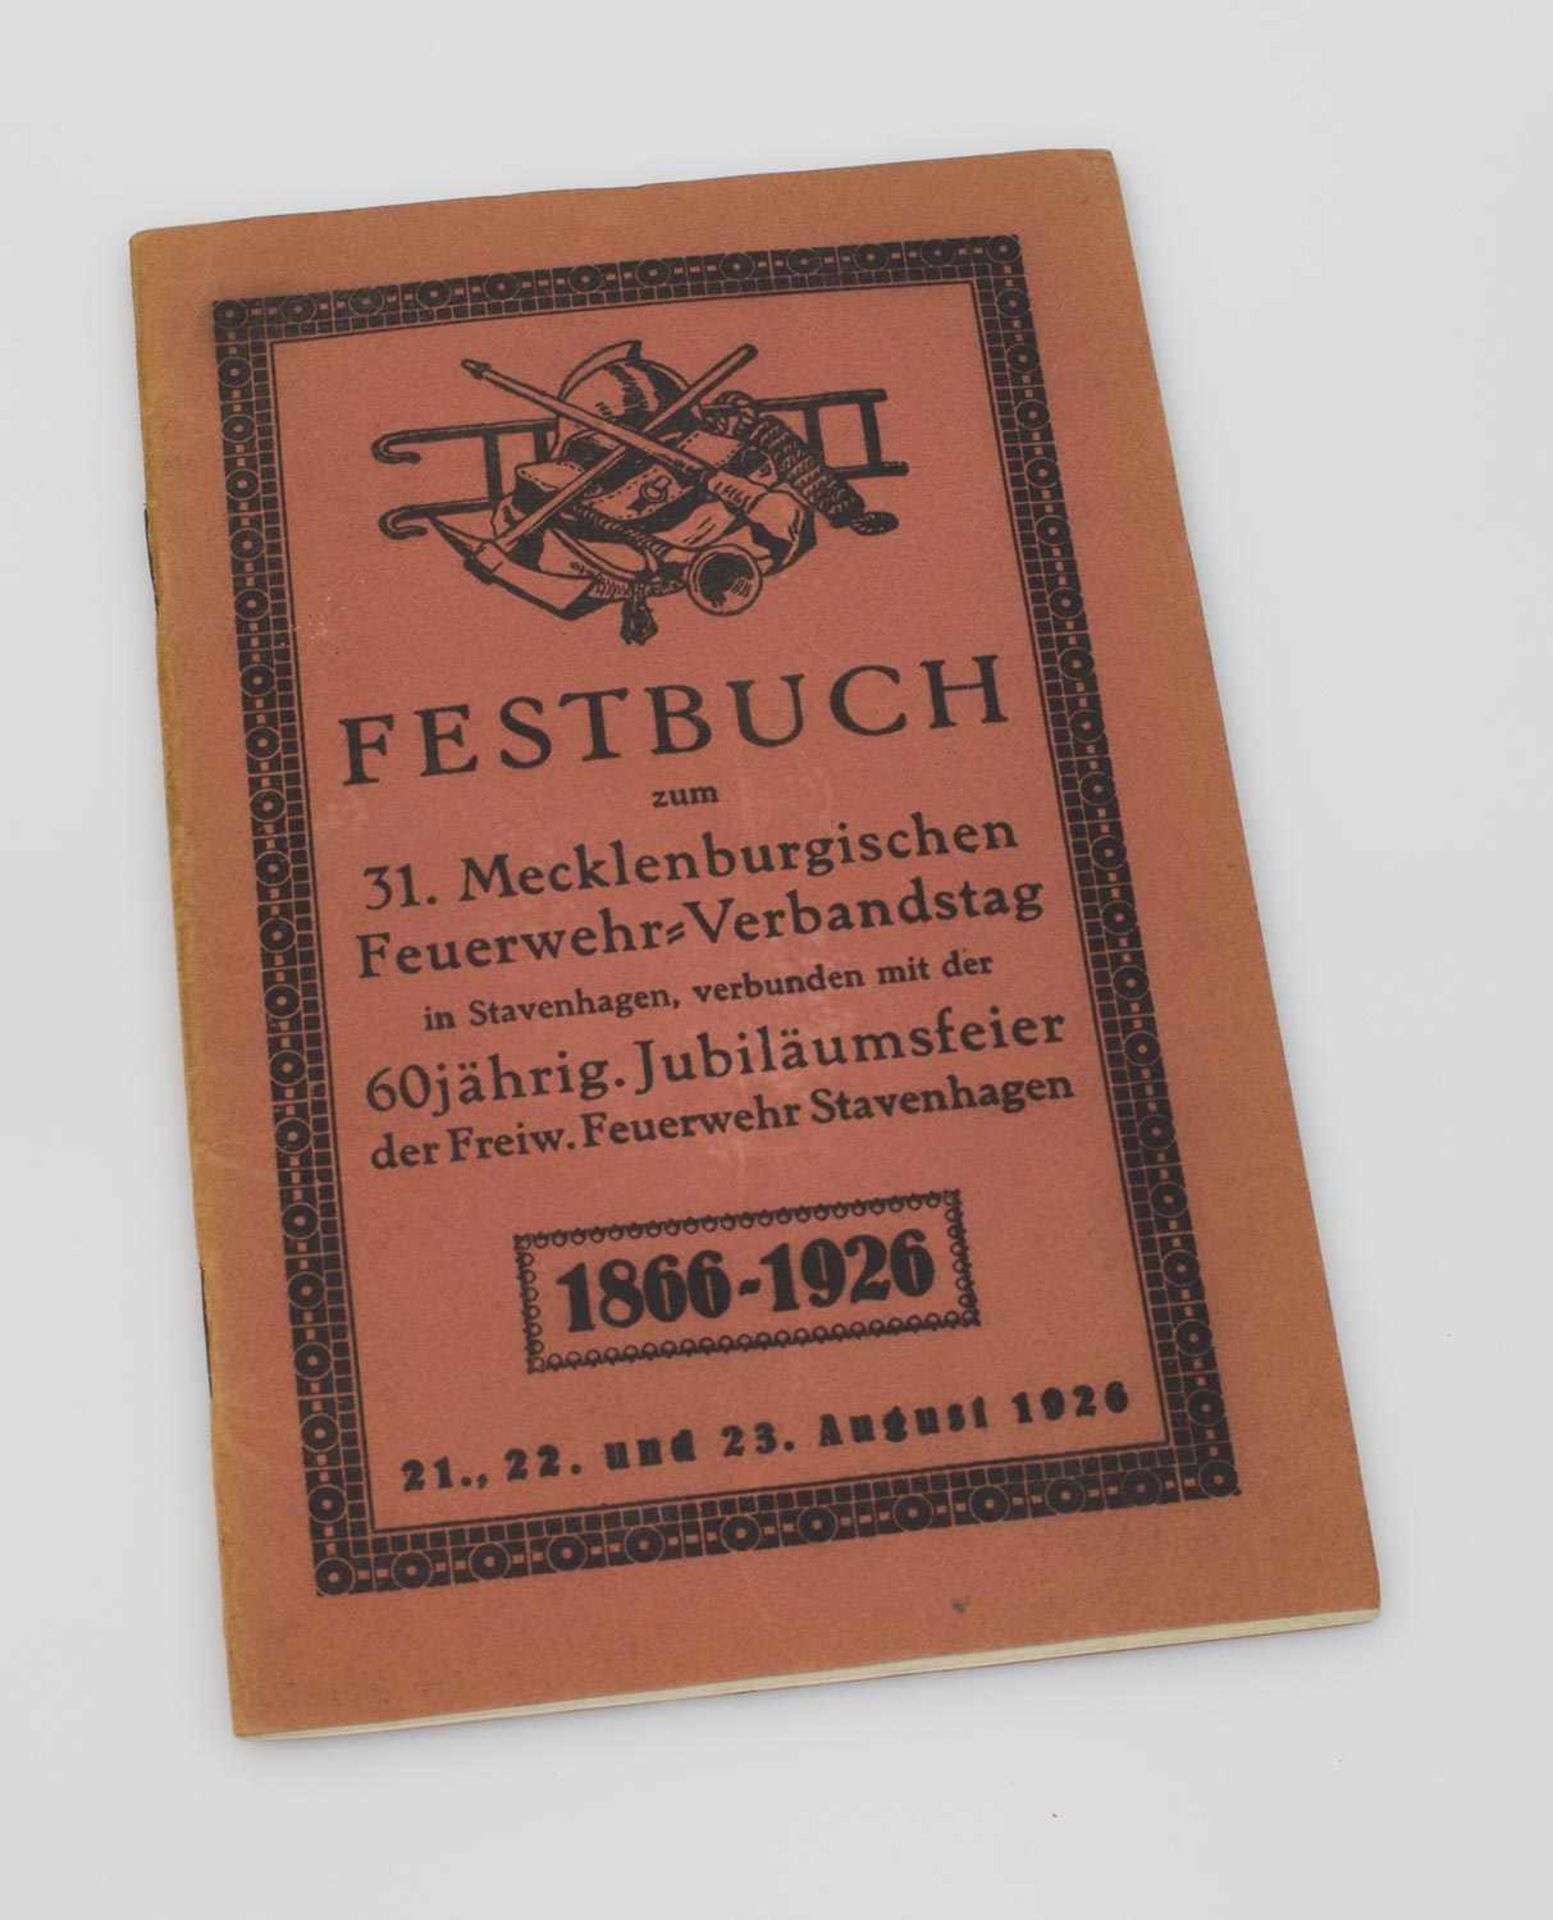 Herausgeber Festbuch zum 31. Mecklenburgischen Feuerwehr-Verbandstag - in Stavenhagen August 1926,